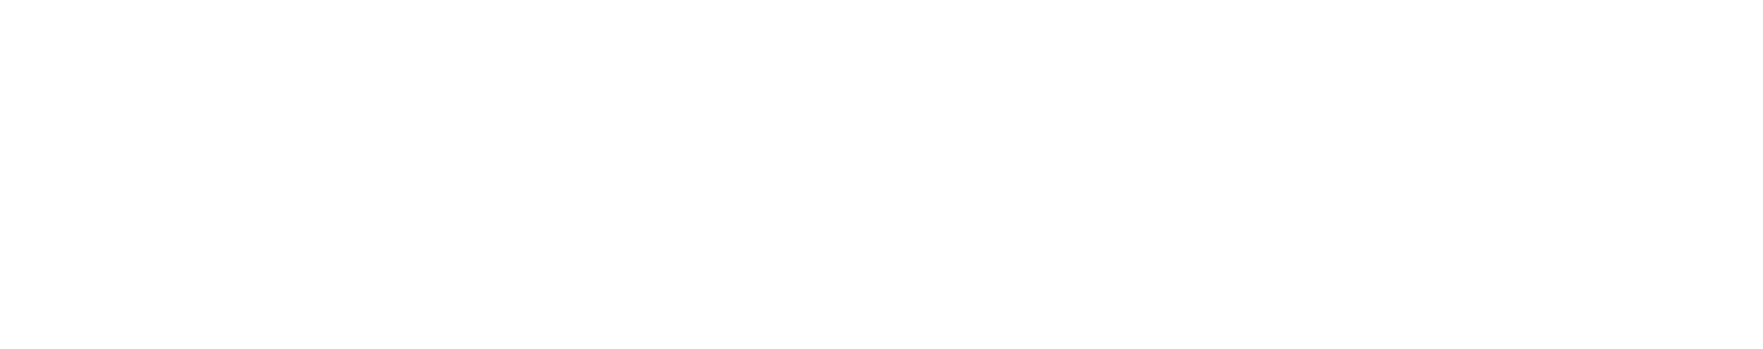 Foundation for Westwood Education Logo